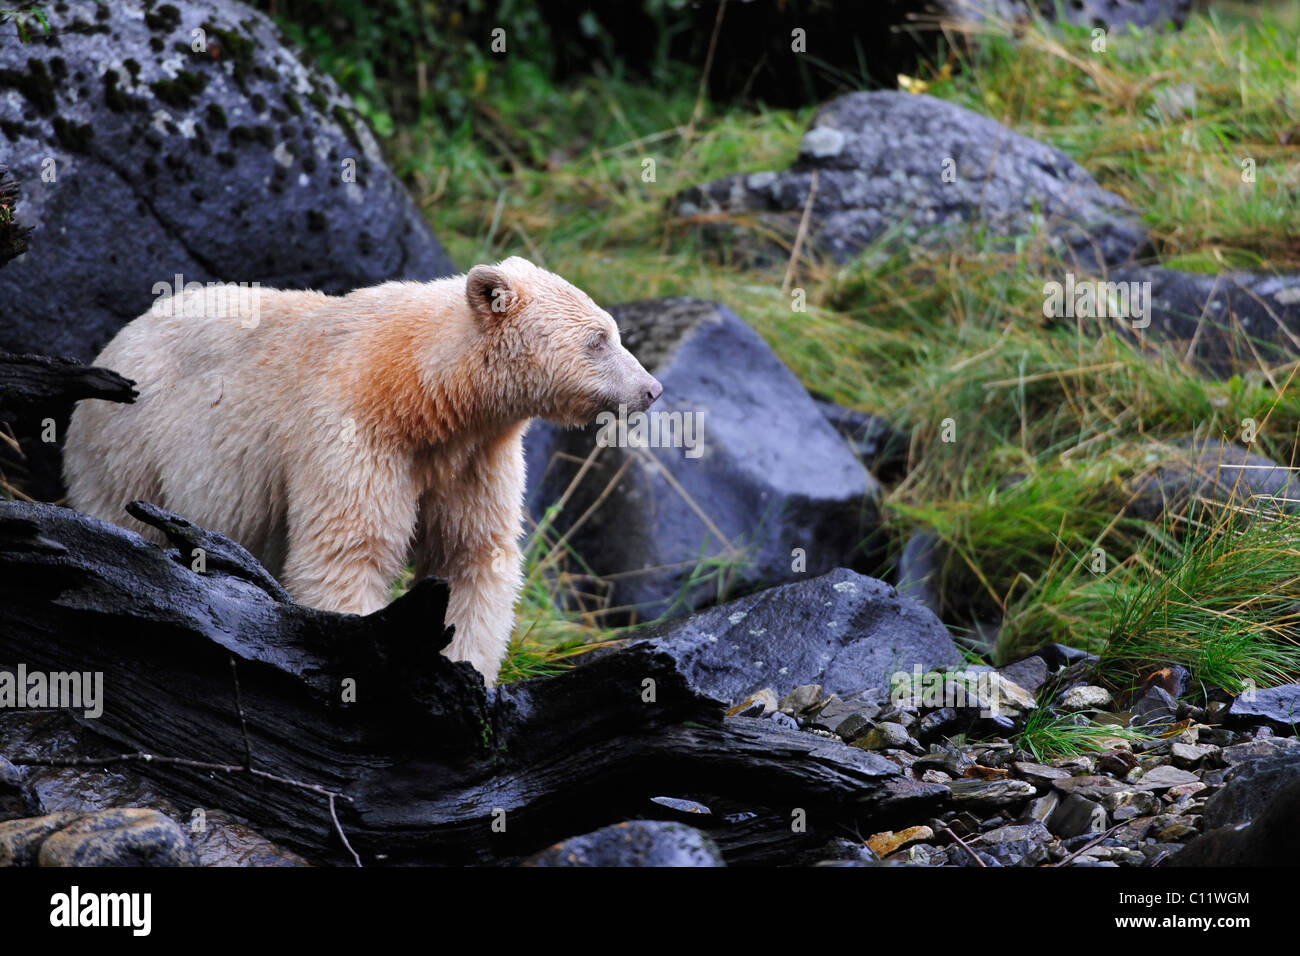 American black bear (Ursus americanus) con pelliccia bianca, noto come Spirito di orso, foresta pluviale del Pacifico, Canada Foto Stock